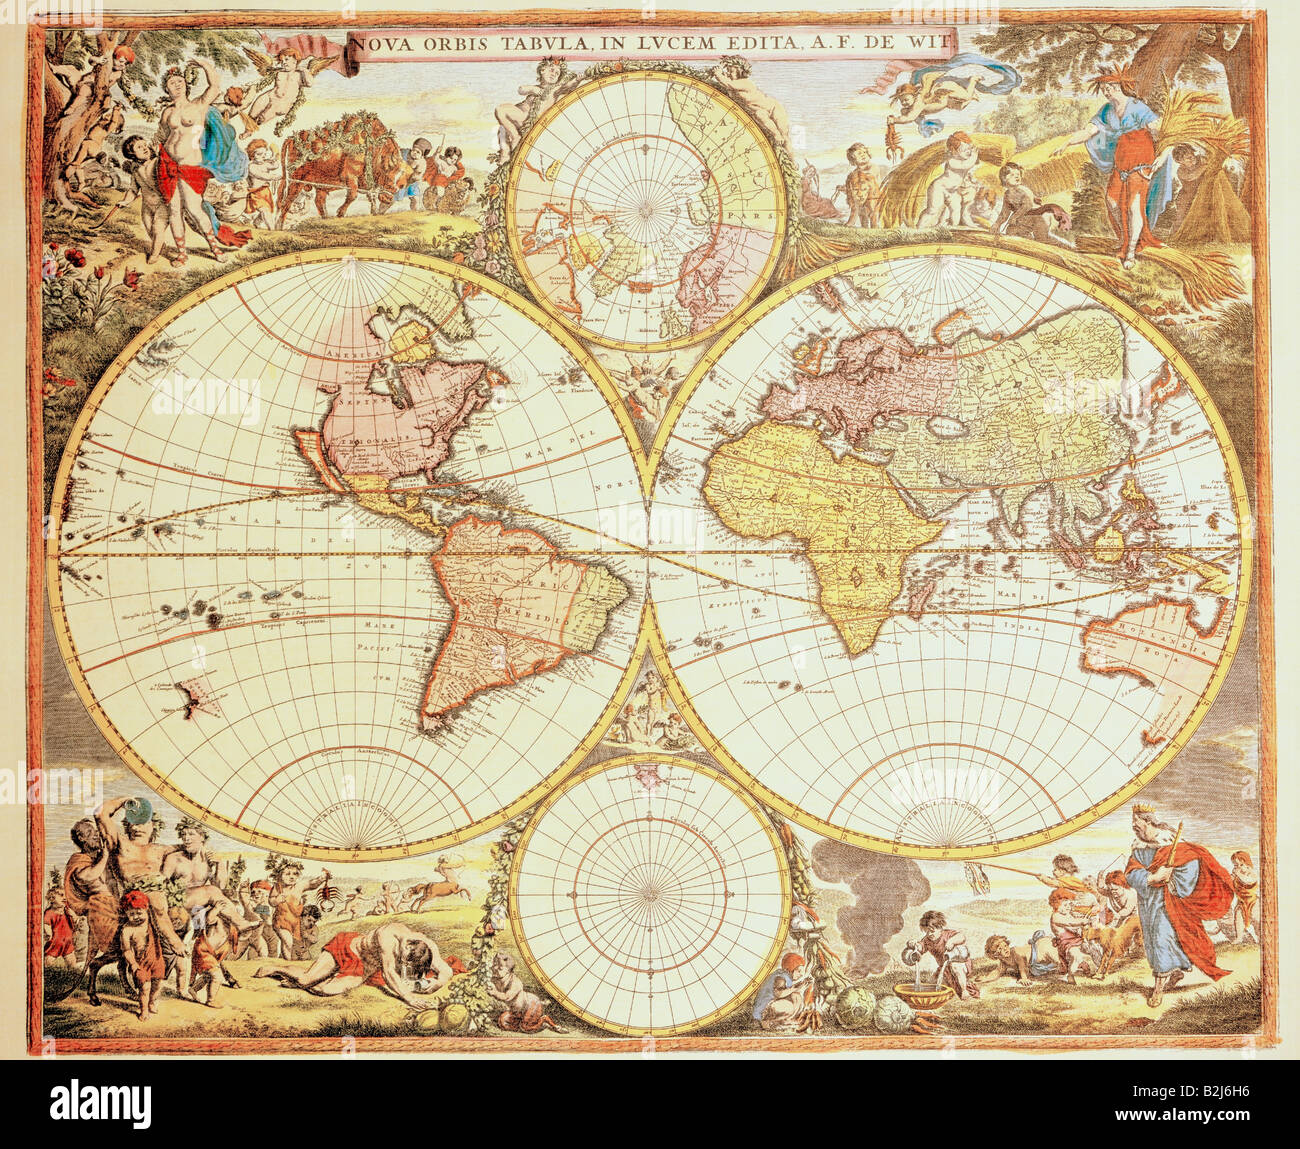 Cartografia, mappe del mondo, "Nova orbis tabula', colorato di incisione su rame stampata da Frederk de Witt, Amsterdam, 1680, collezione privata, , artista del diritto d'autore non deve essere cancellata Foto Stock